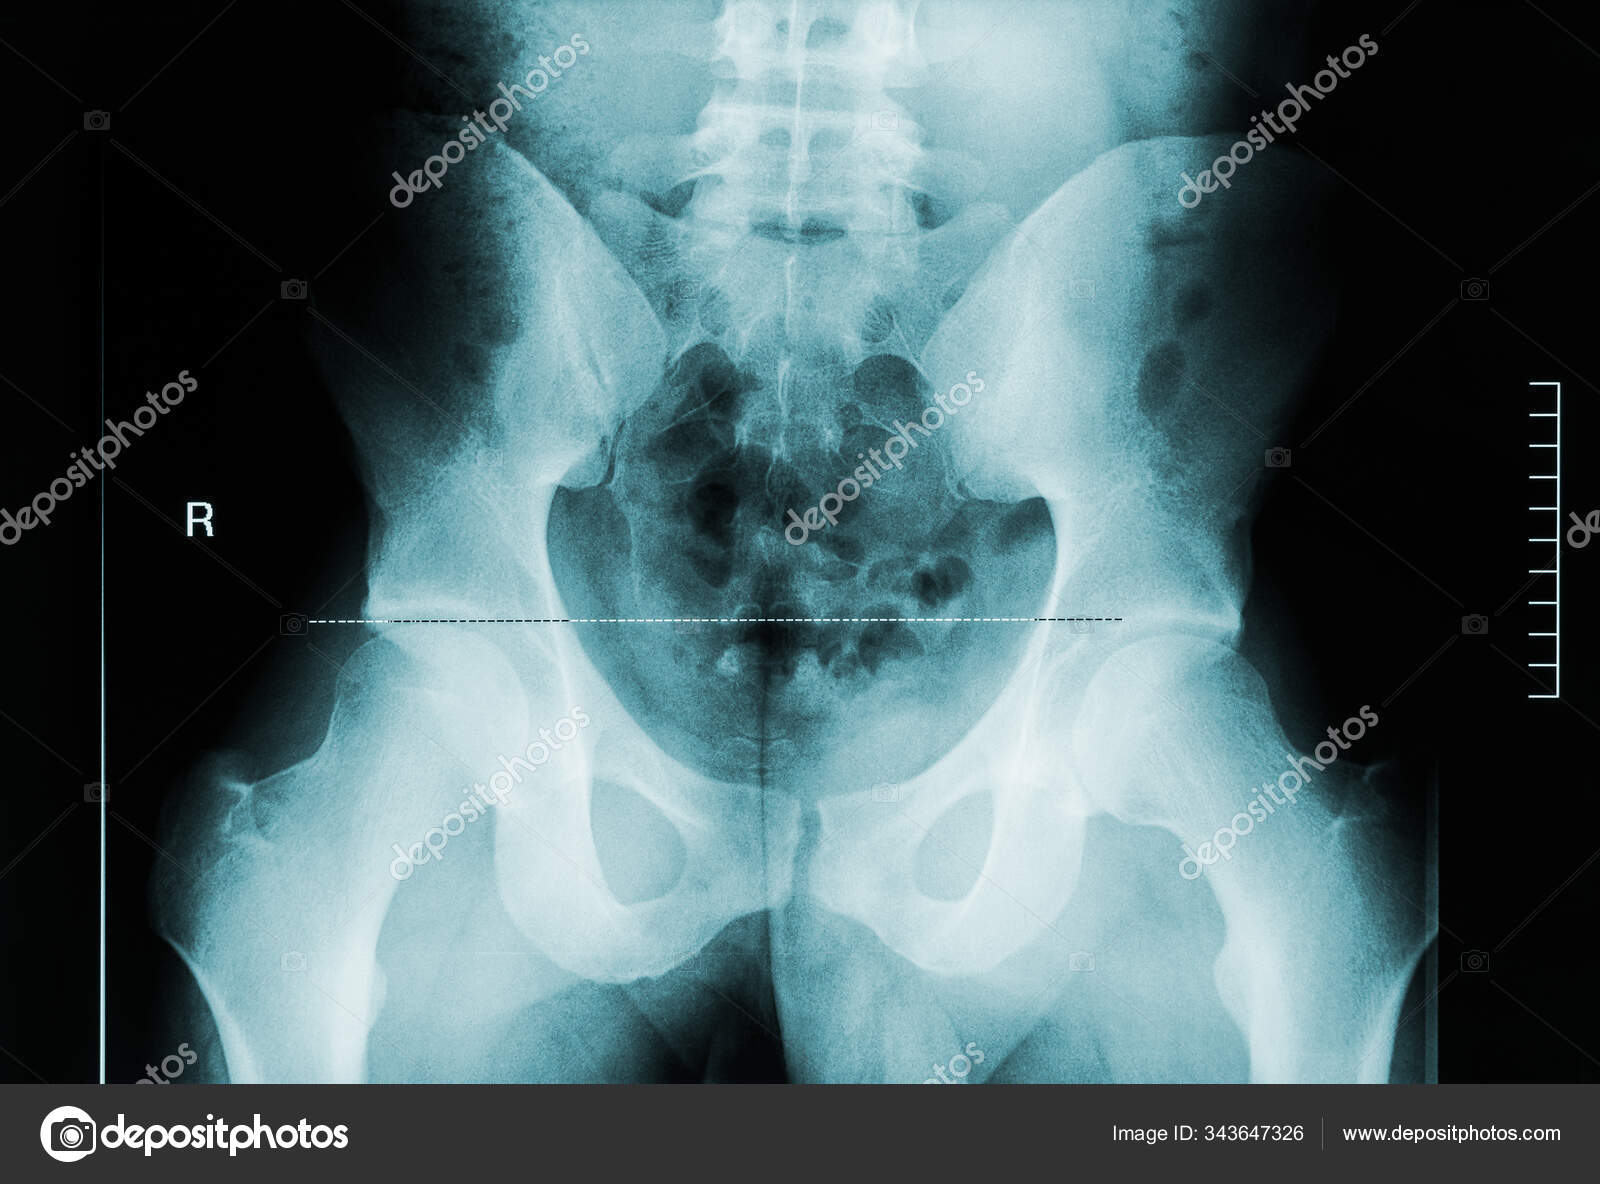 뒤에서는 남성 골반 대퇴골 척추뼈 의 x 선 사진을 볼 수있습니다 의학 과 인간 해부학적 형상 스톡 사진